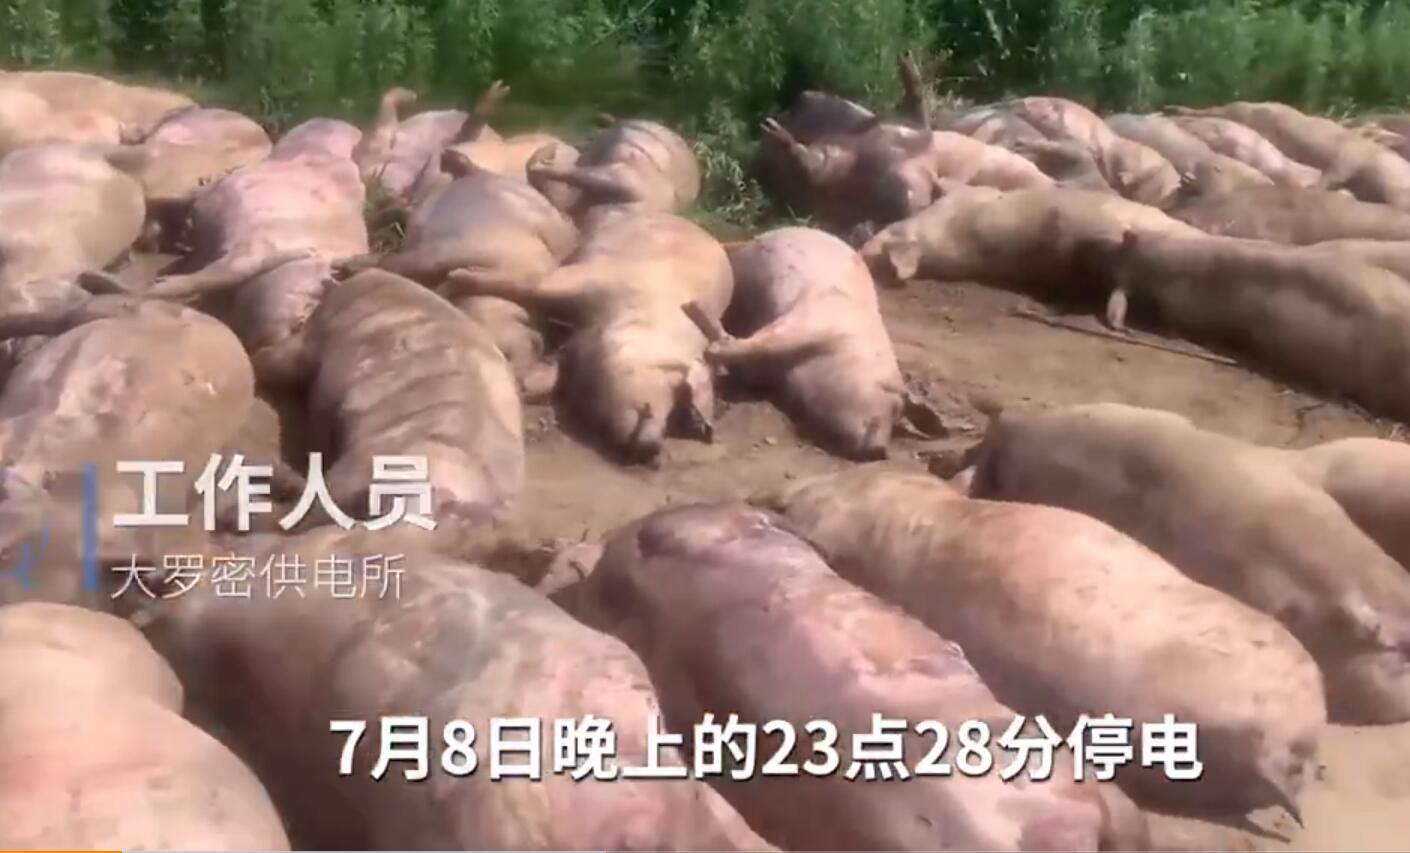 猪场因断电死亡462头猪损失近百万 凌晨断电导致猪舍温度升至60多度